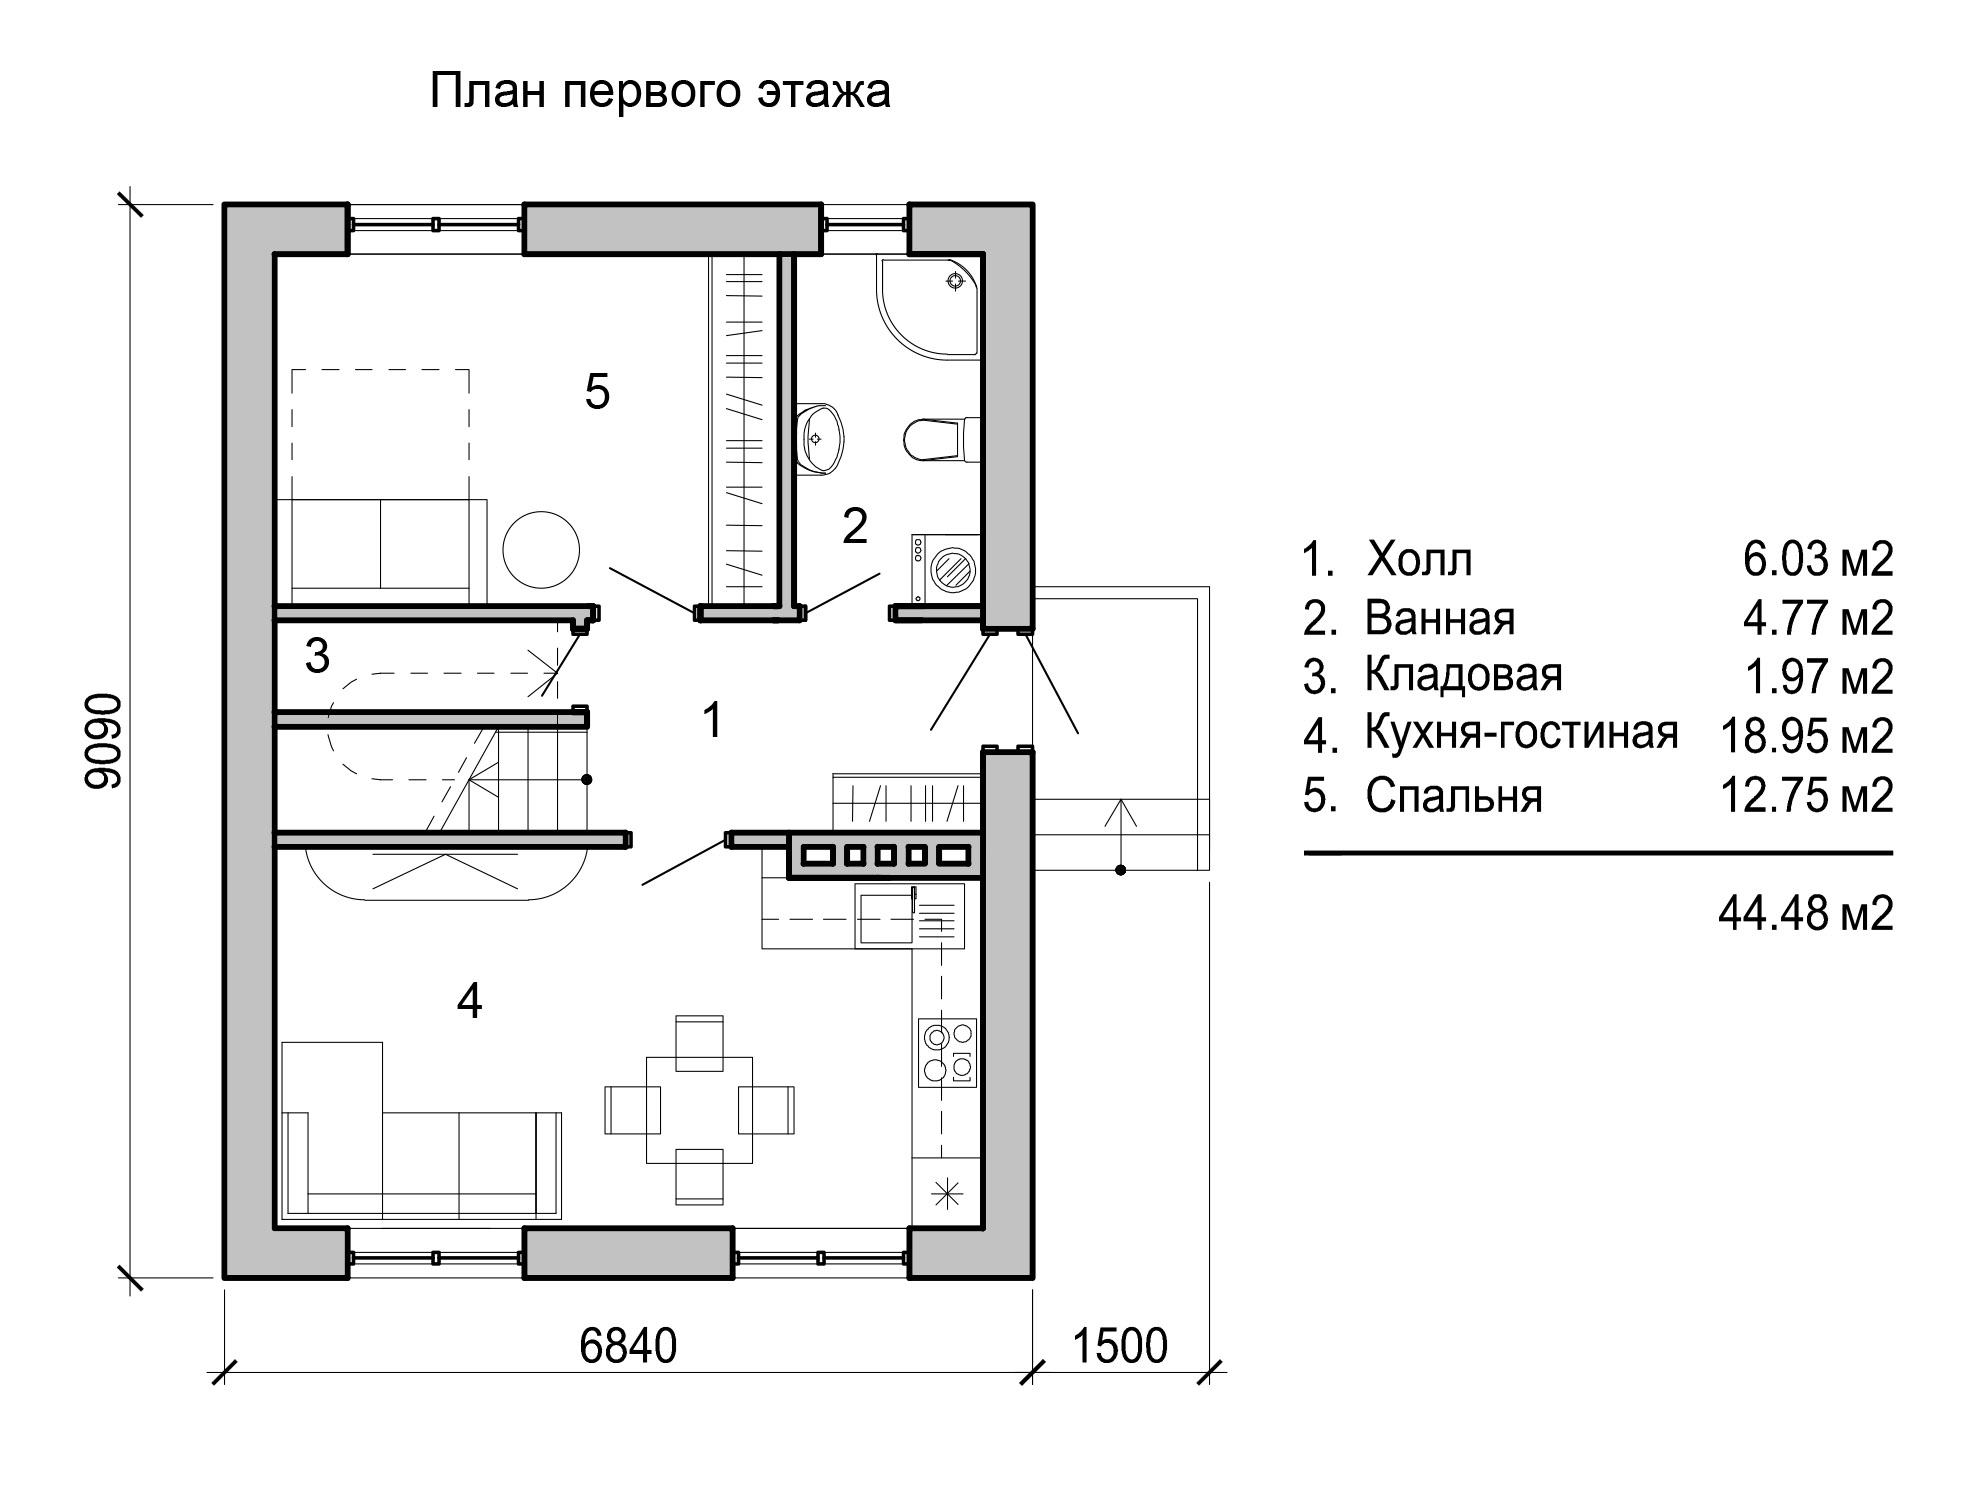 Планировка 1 этажа с санузлом